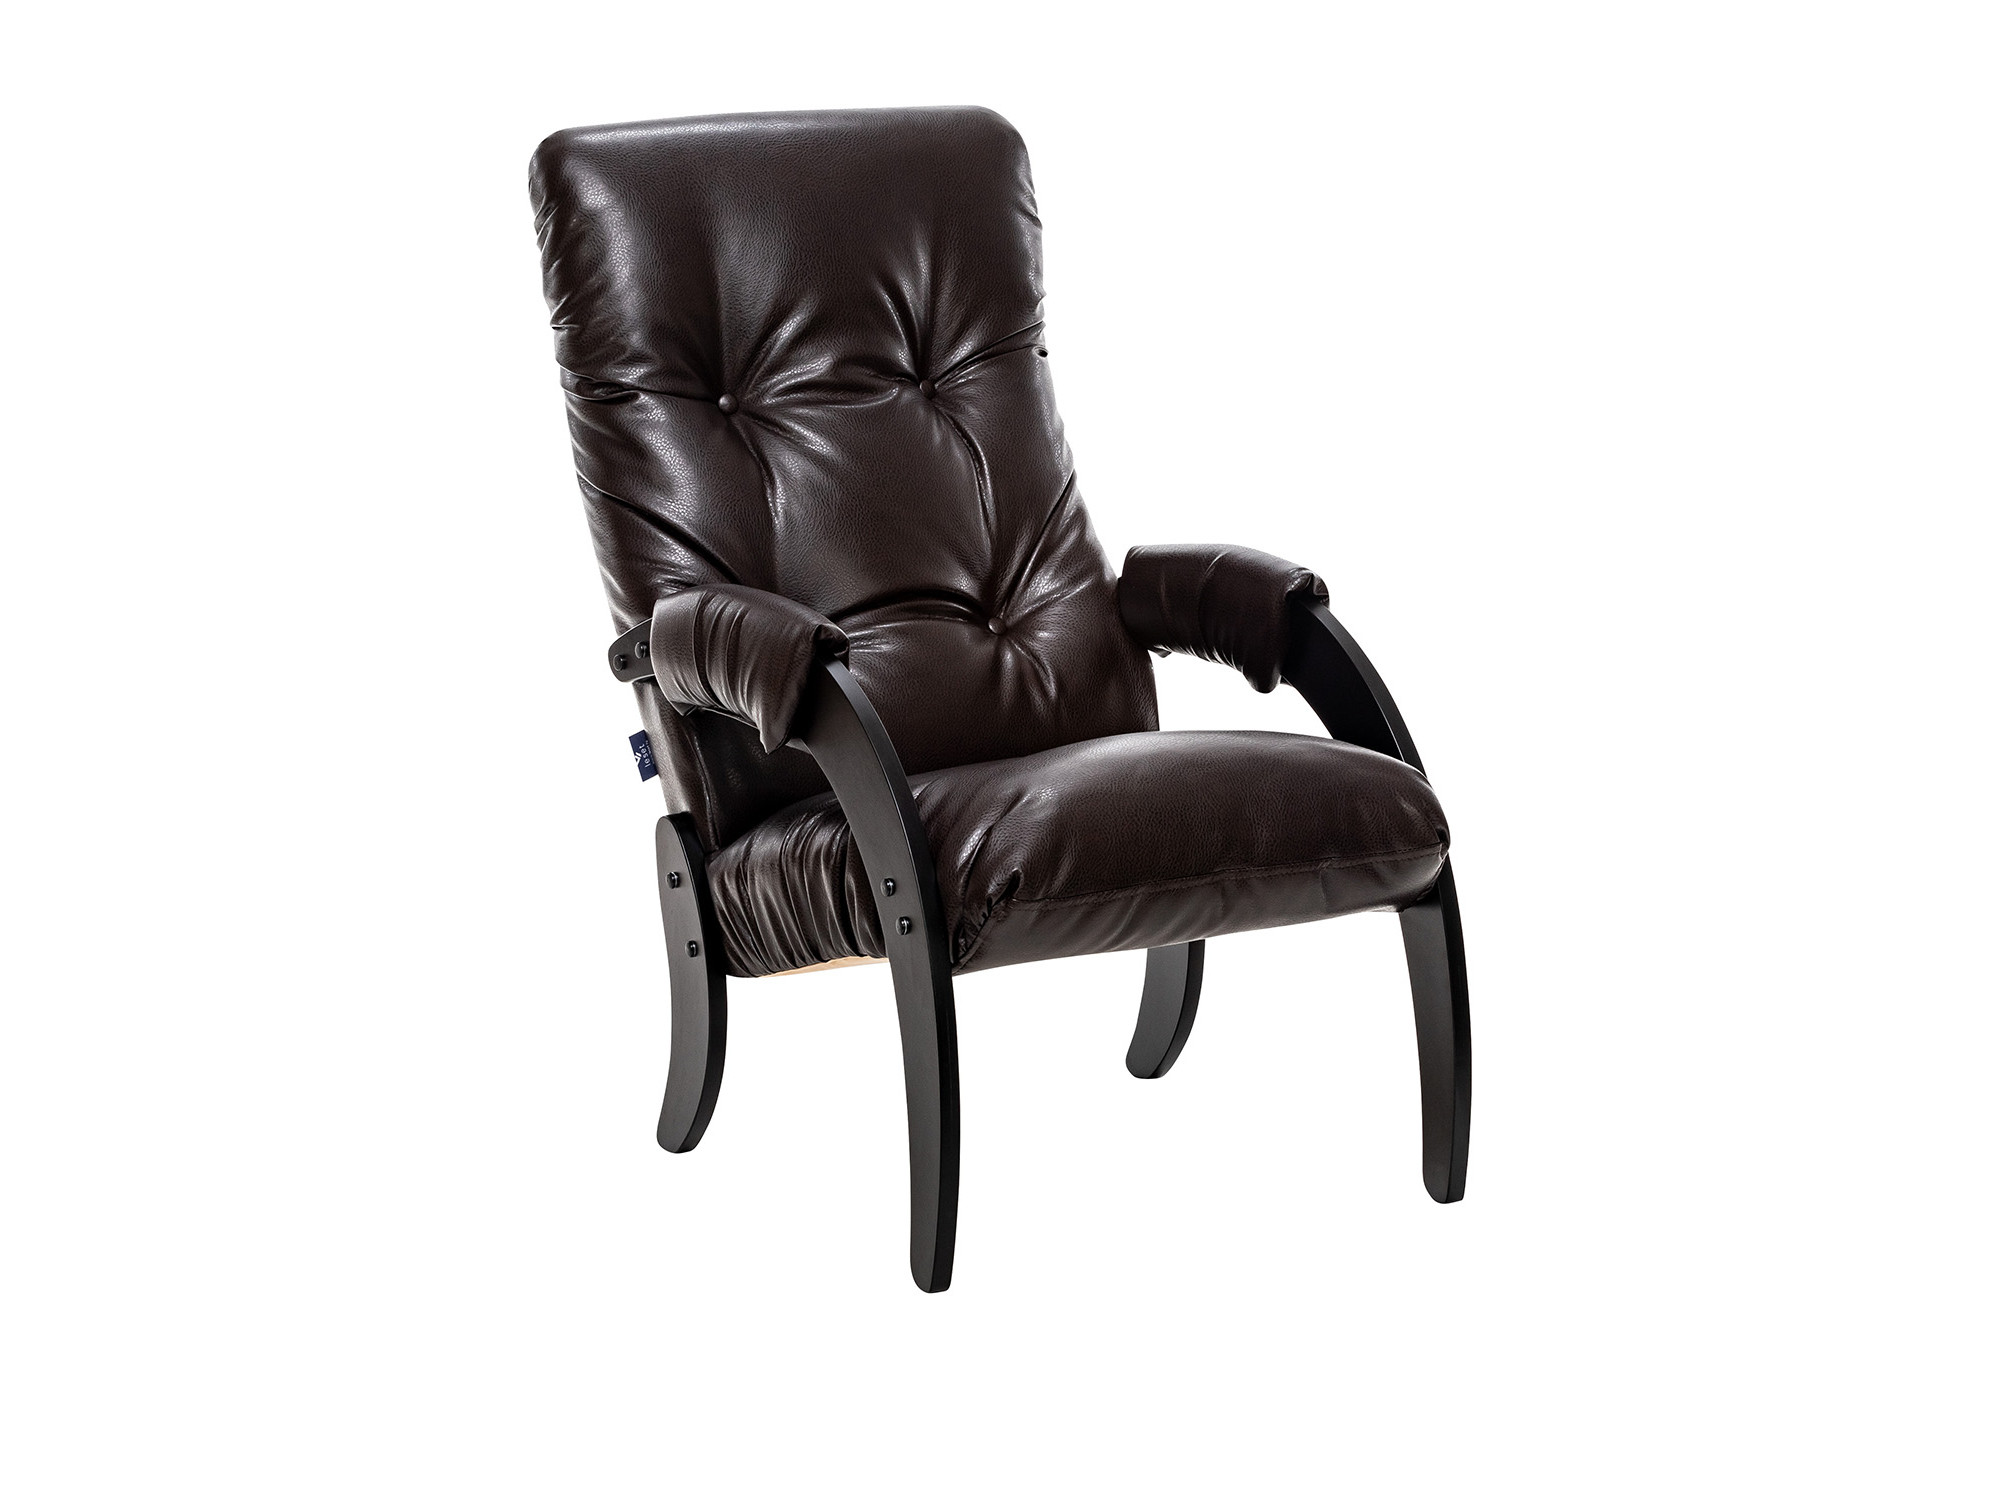 Кресло для отдыха Модель 61 Венге текстура, к/з Varana DK-BROWN MebelVia Varan кресло для отдыха модель 11 770х760х970 венге ткань verona apple green